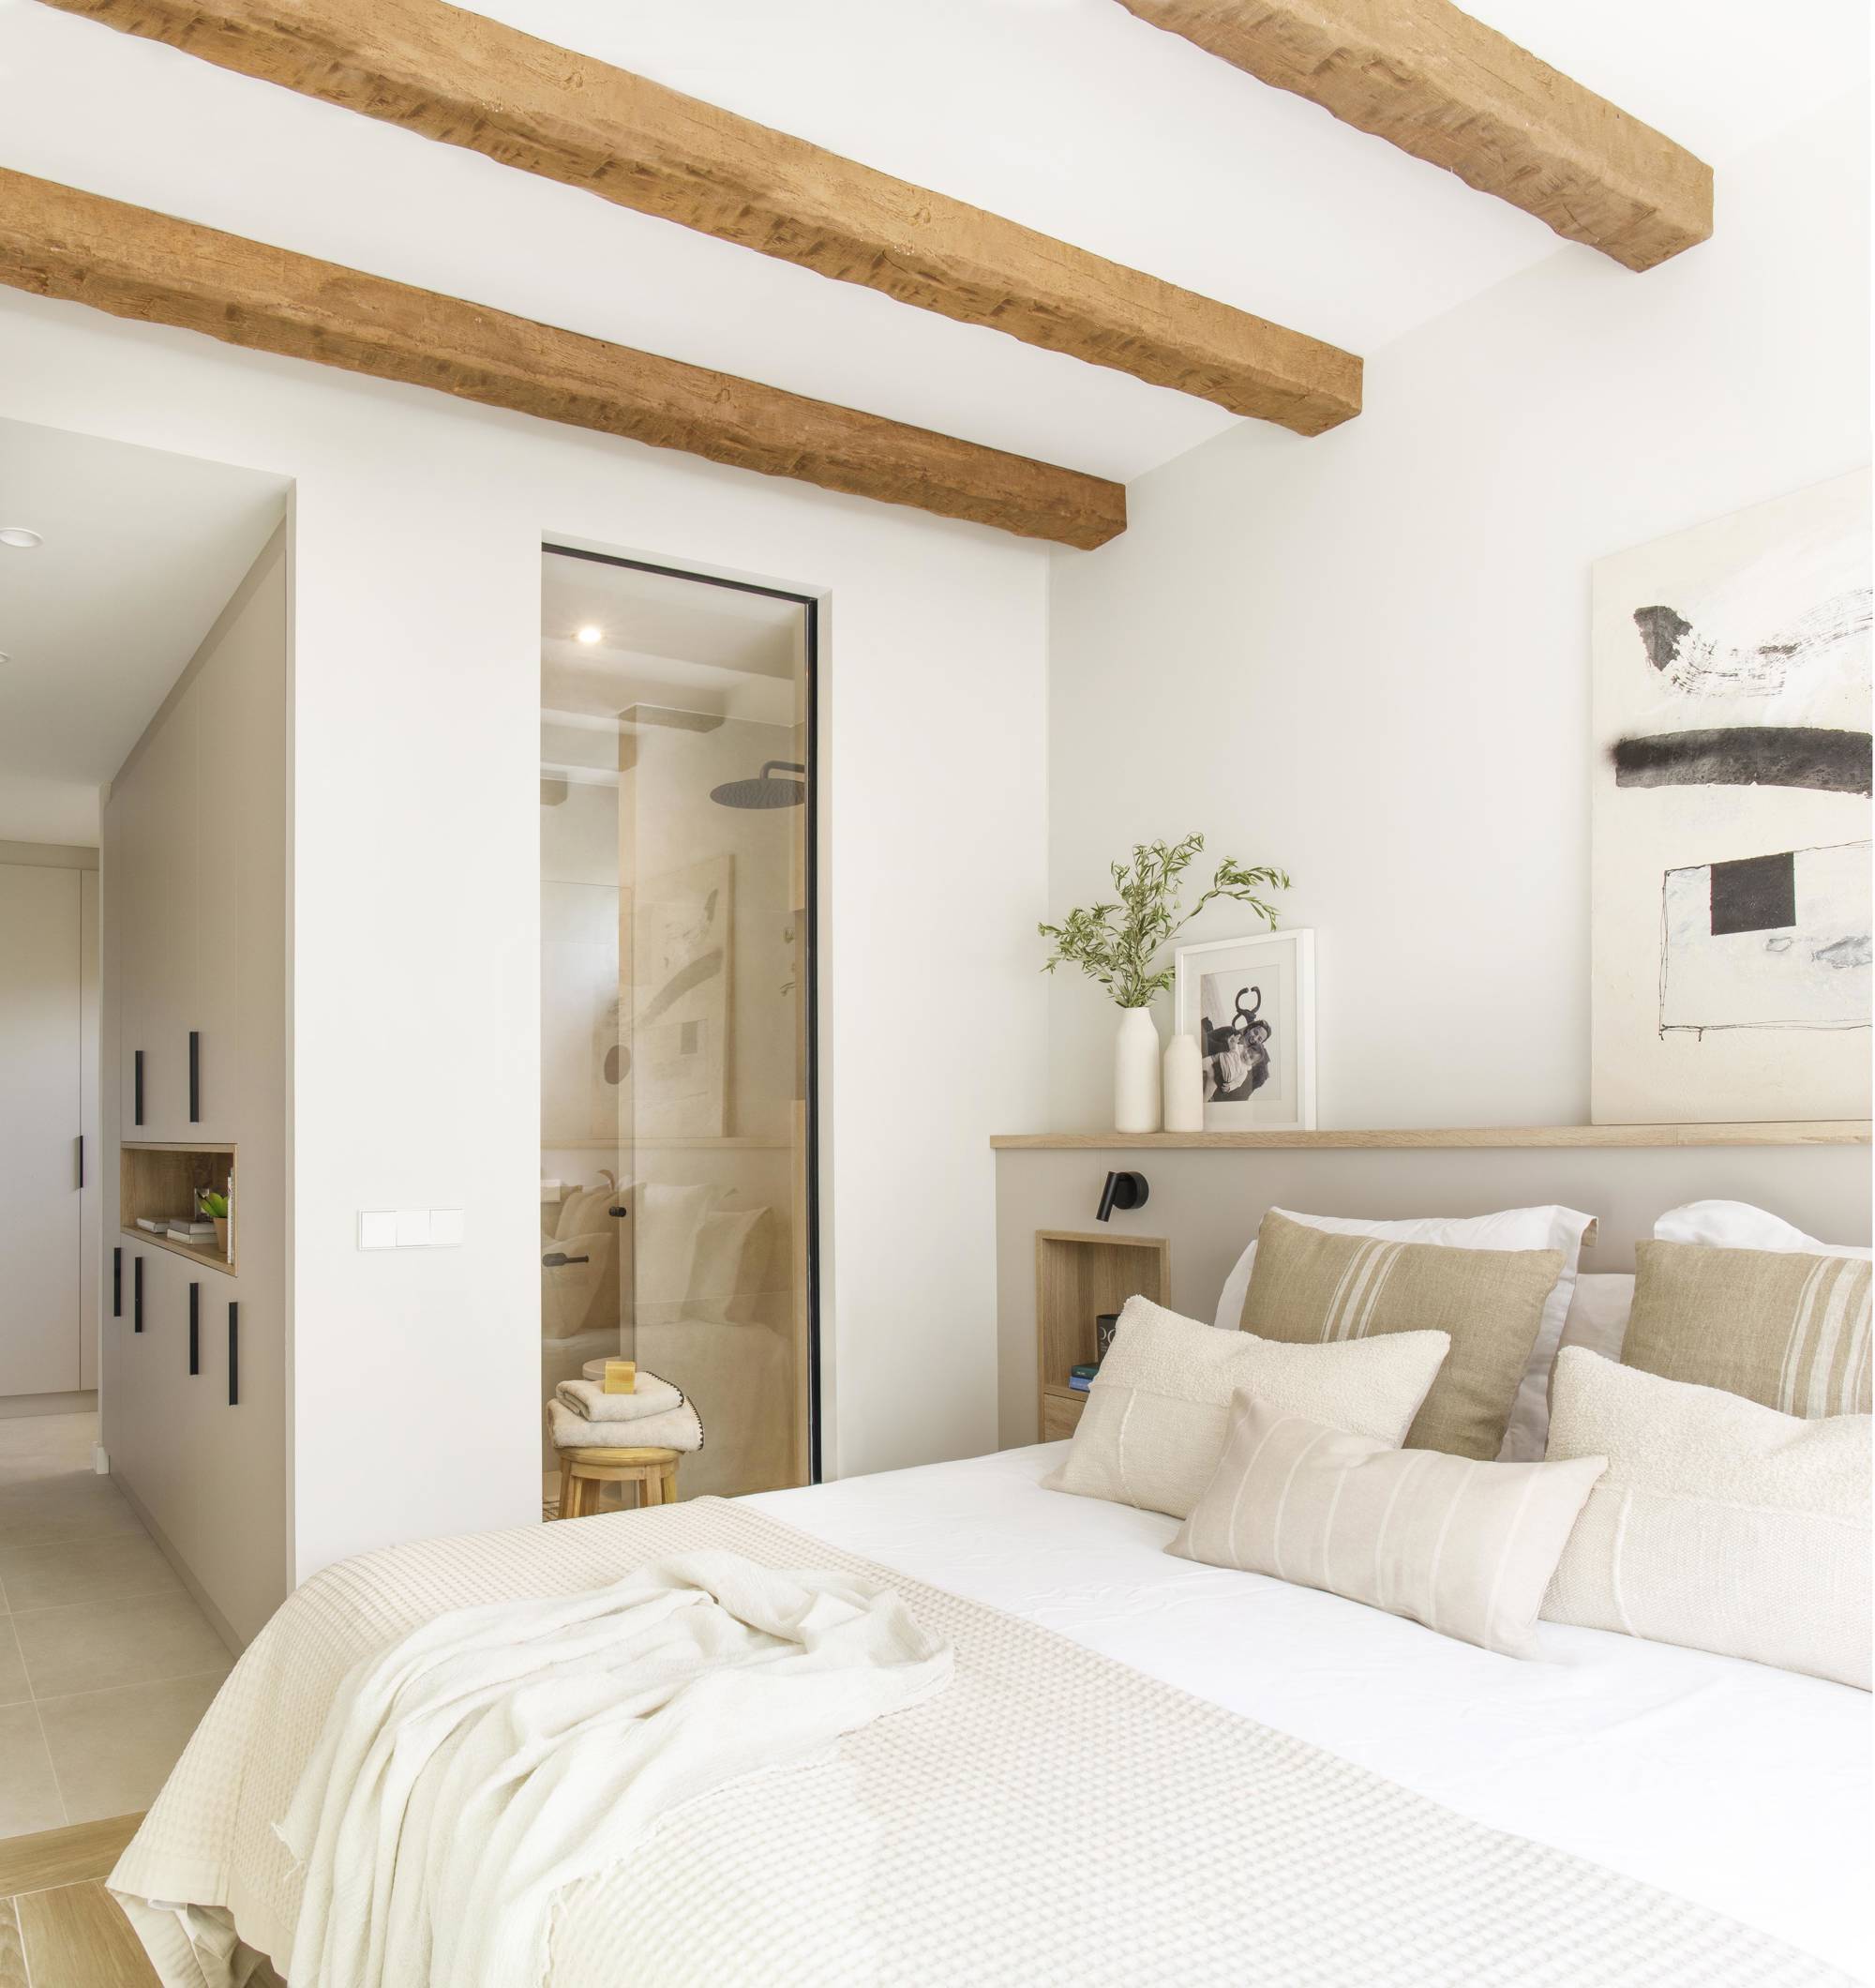 Dormitorio principal en tonos neutros con vigas en el techo, cabecero con hornacinas y cristalera que da al baño. 